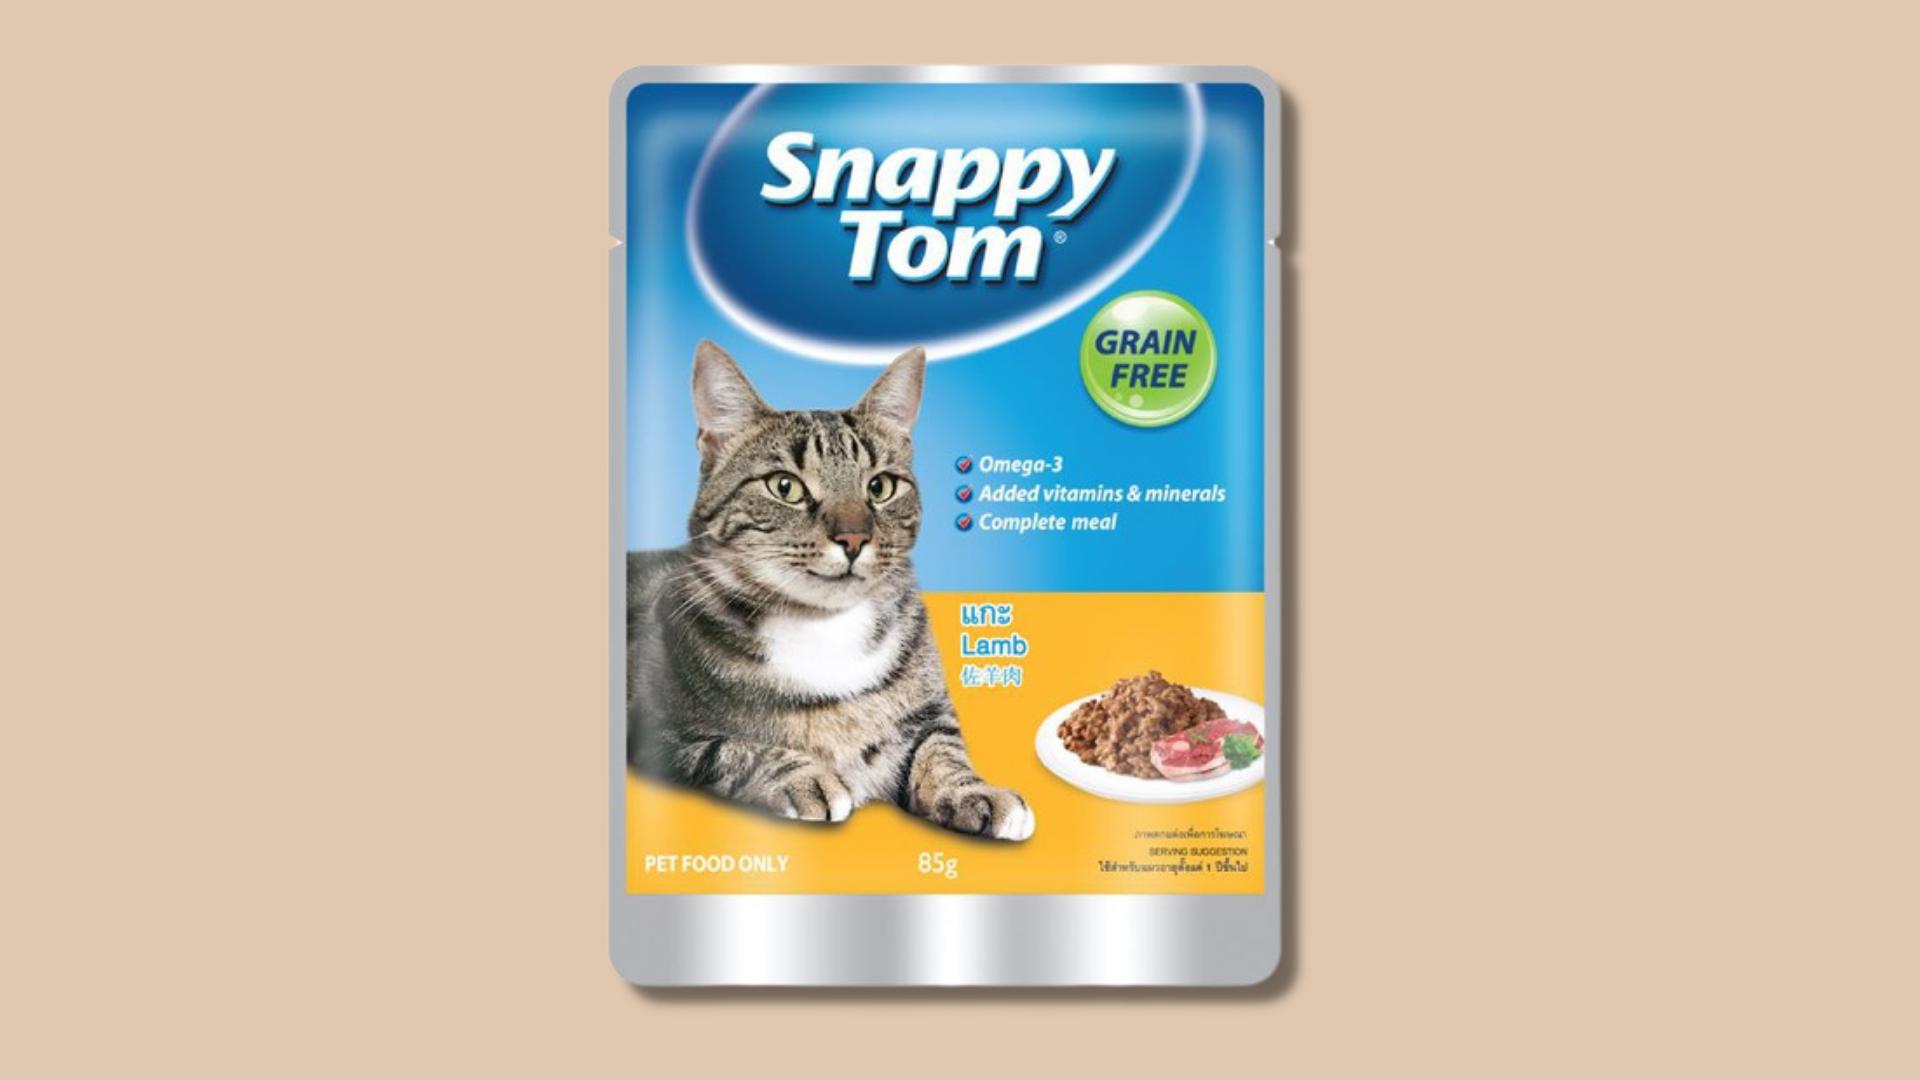 Snappy Tom Gravy - Thức Ăn Ướt Cho Mèo 85g